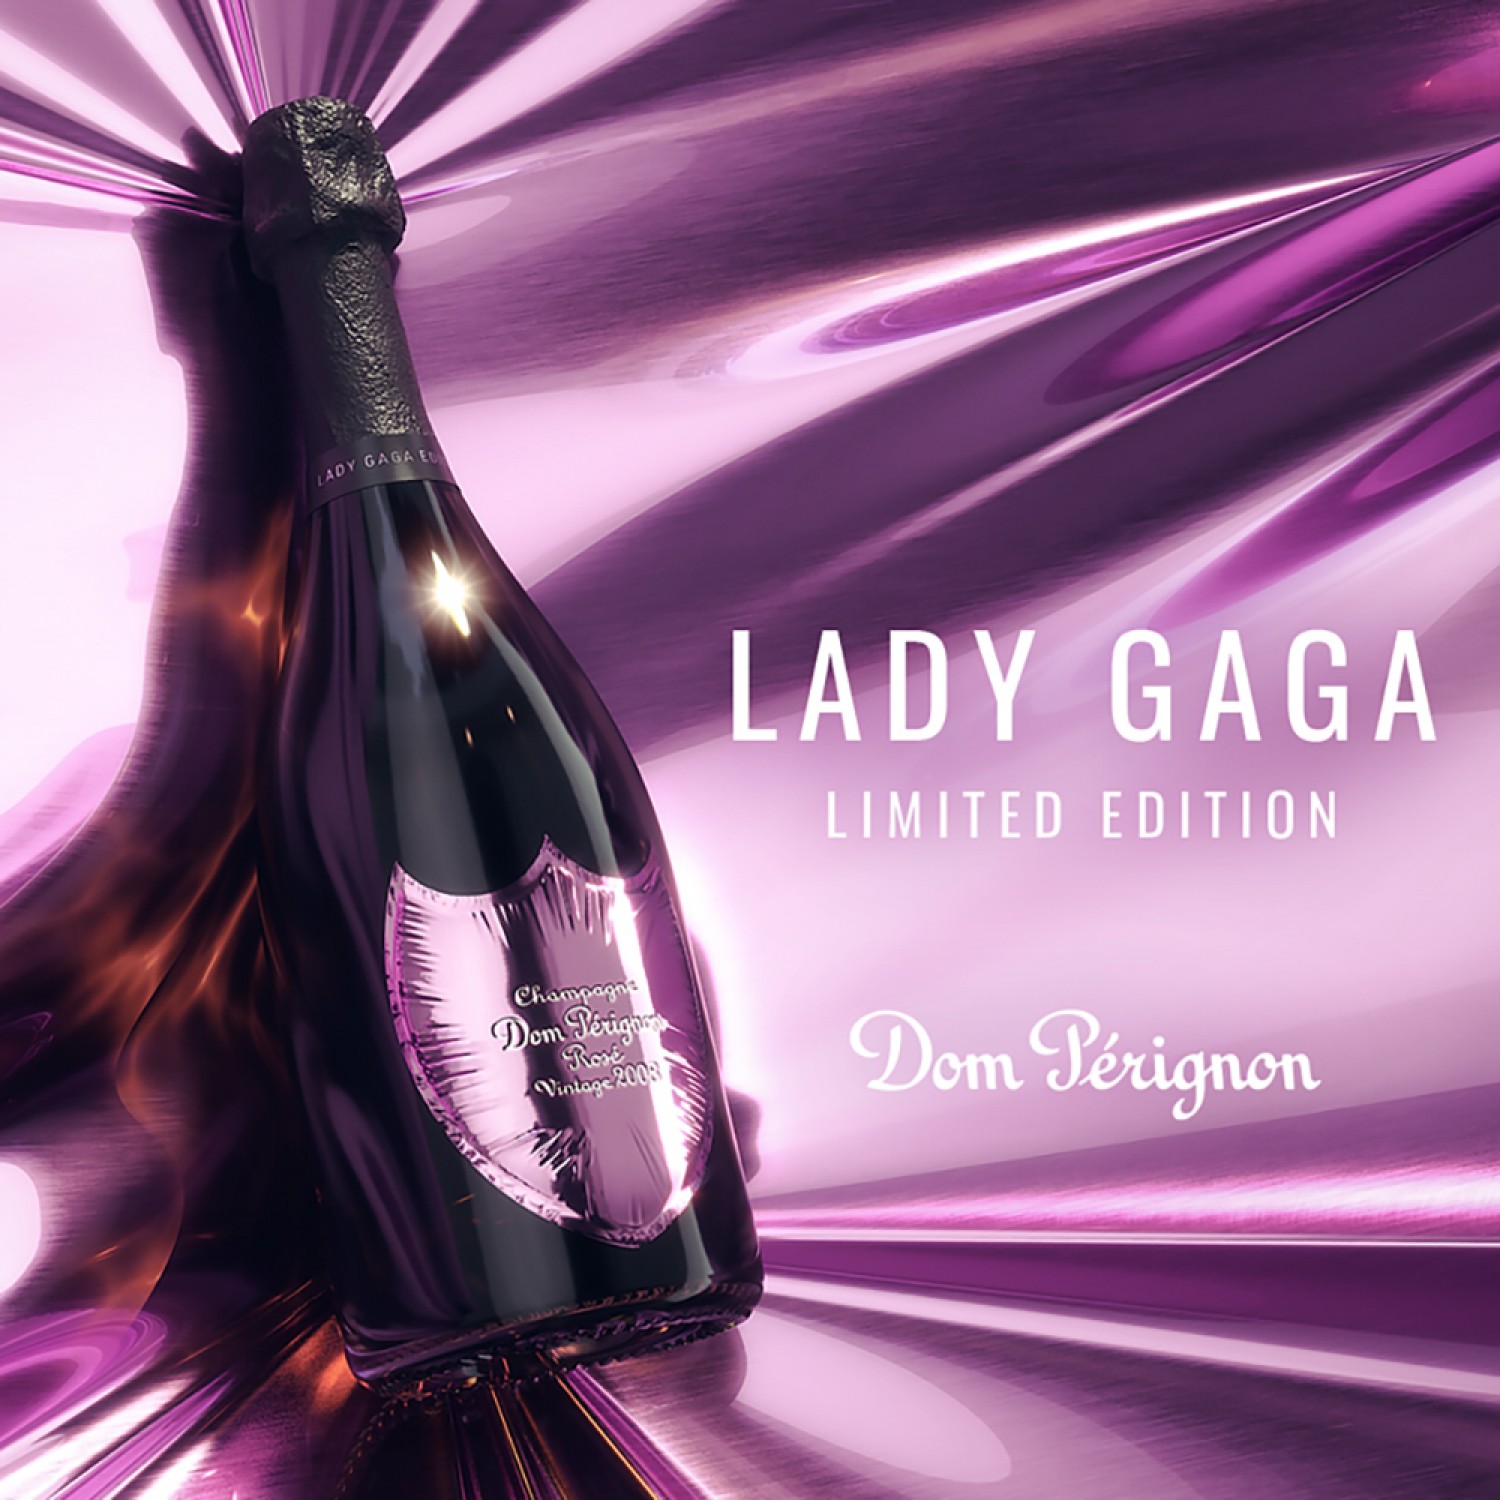 2008 Dom Perignon Rose x Lady Gaga limited edition, 750ml